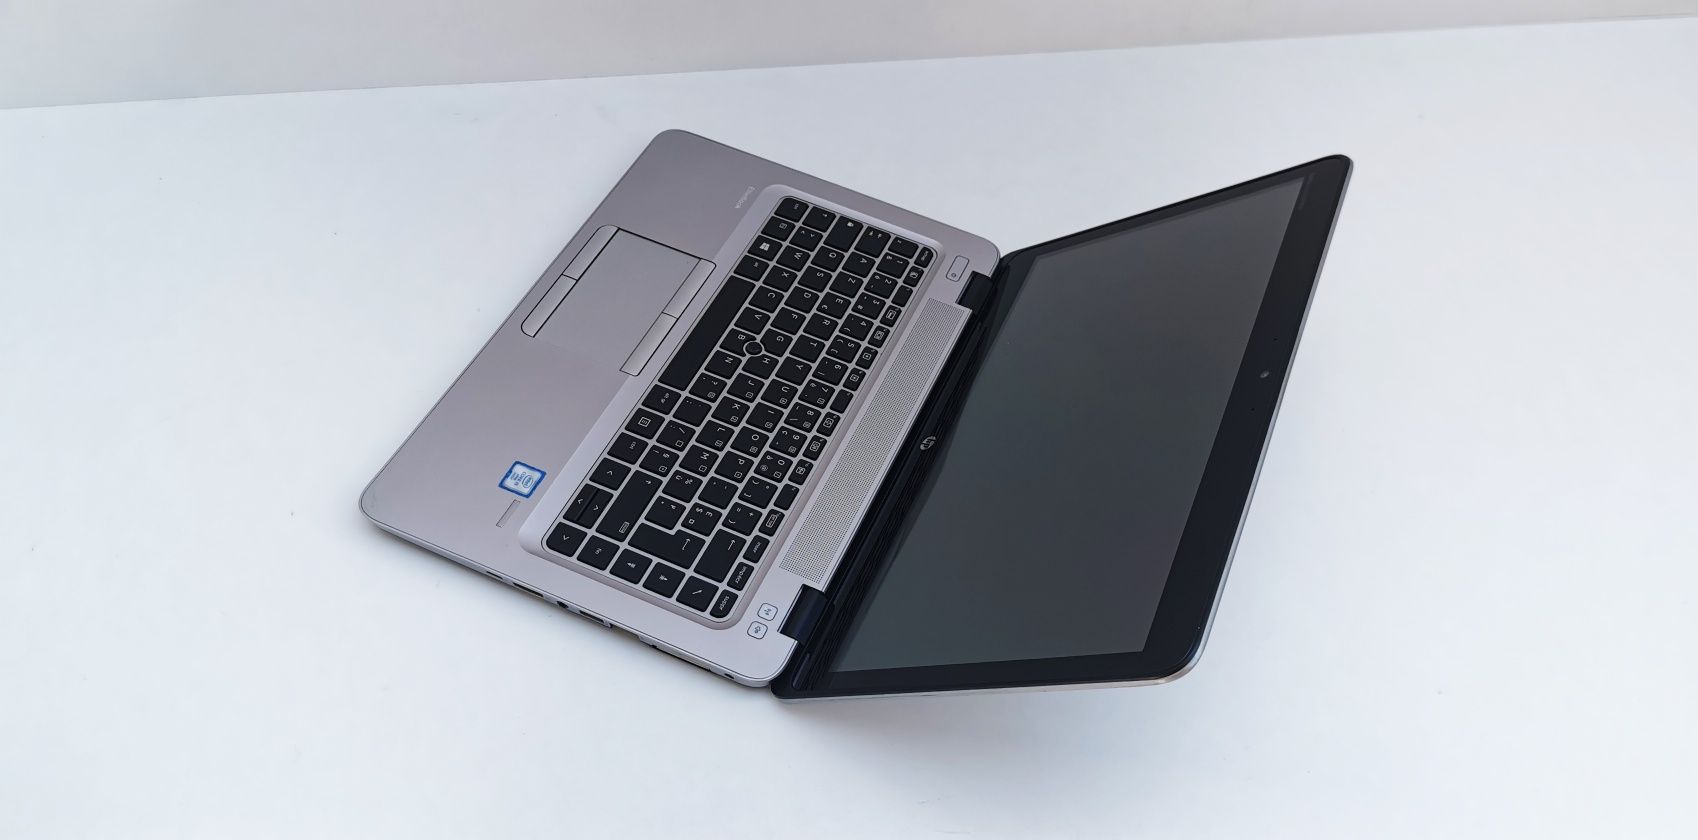 HP EliteBook 820 G3 Procesor i5 6200U 8 GB DDR4 256 GB SSD Intel HD